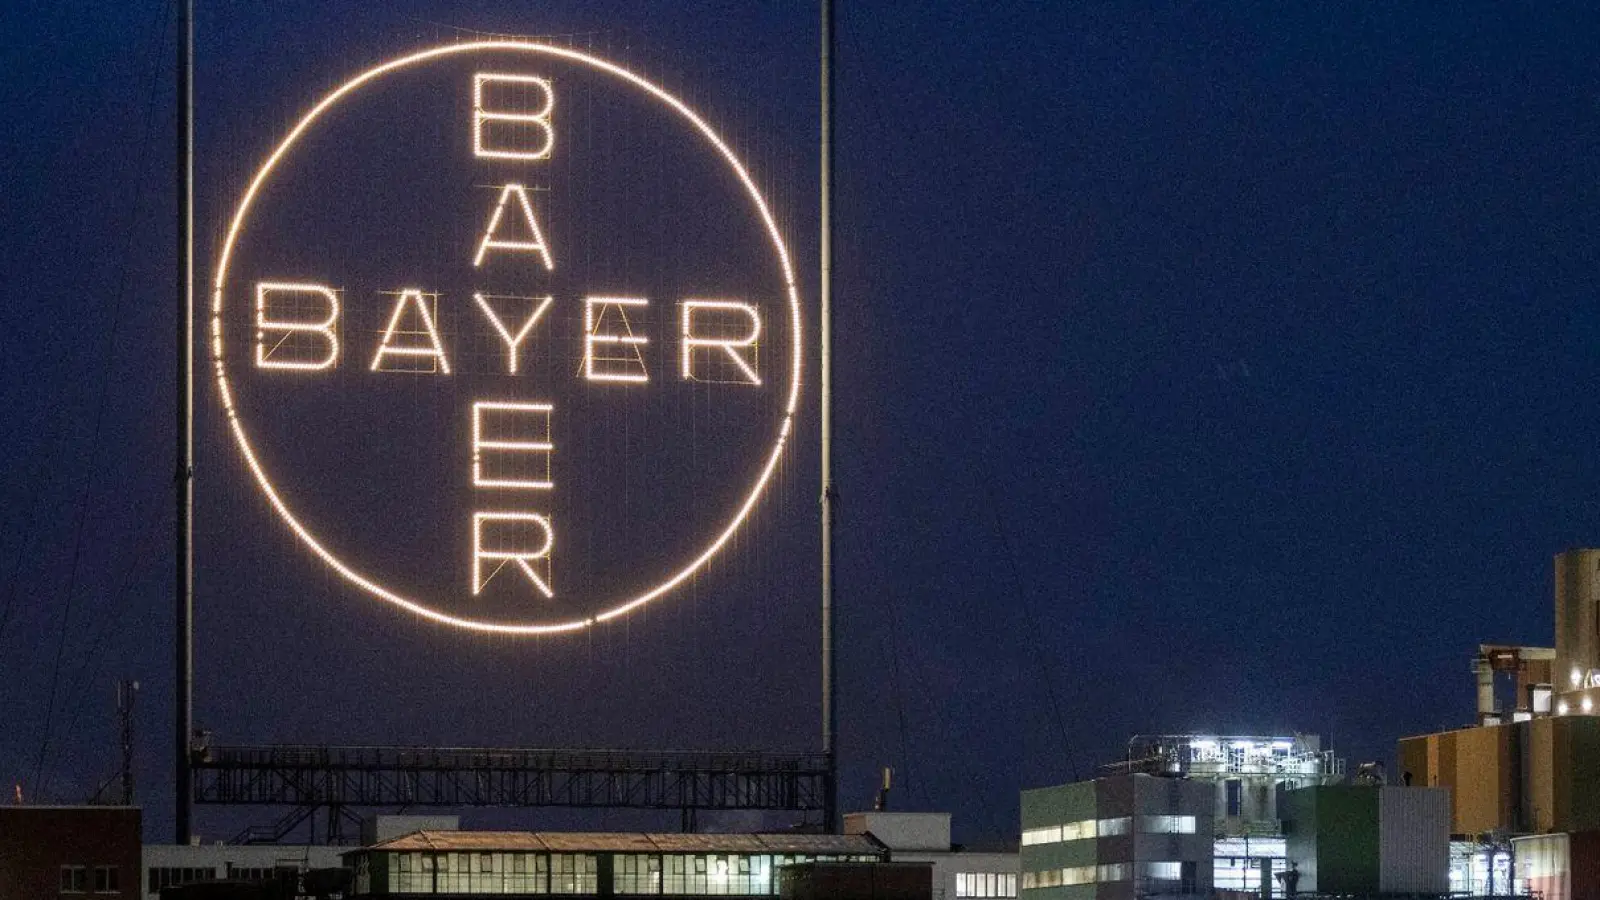 Bei dem Agrarchemie- und Pharmakonzern Bayer gibt es große Umstrukturierungen. (Foto: Thomas Banneyer/dpa)